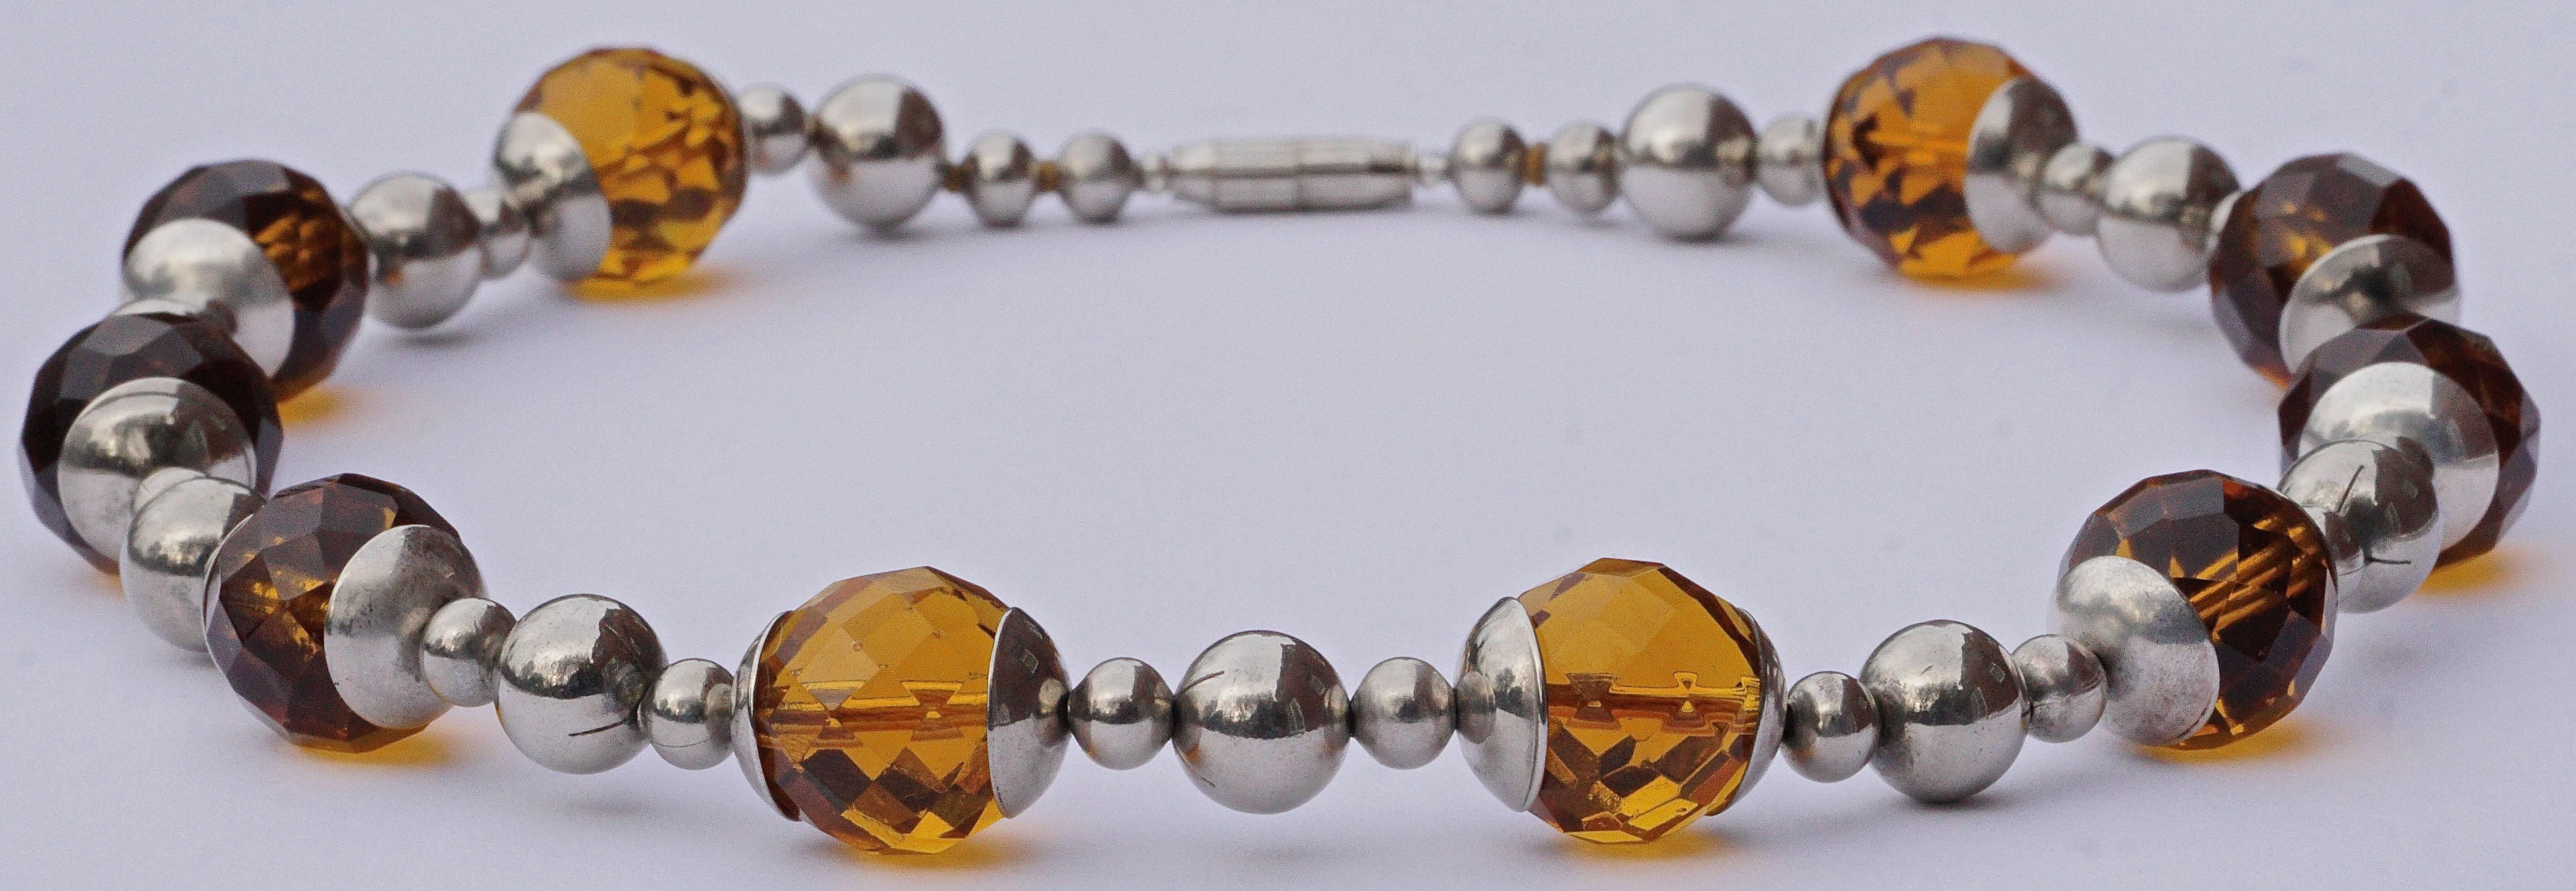 Art Deco Chrom-Halskette mit facettierten Bernsteinglasperlen, Länge 46,7 cm / 18,4 Zoll. Die Glasperlen haben einen Durchmesser von 1.5cm / .59 inch. Diese Halskette wurde professionell neu aufgezogen, und der alte Verschluss ist ein Ersatz.

Der